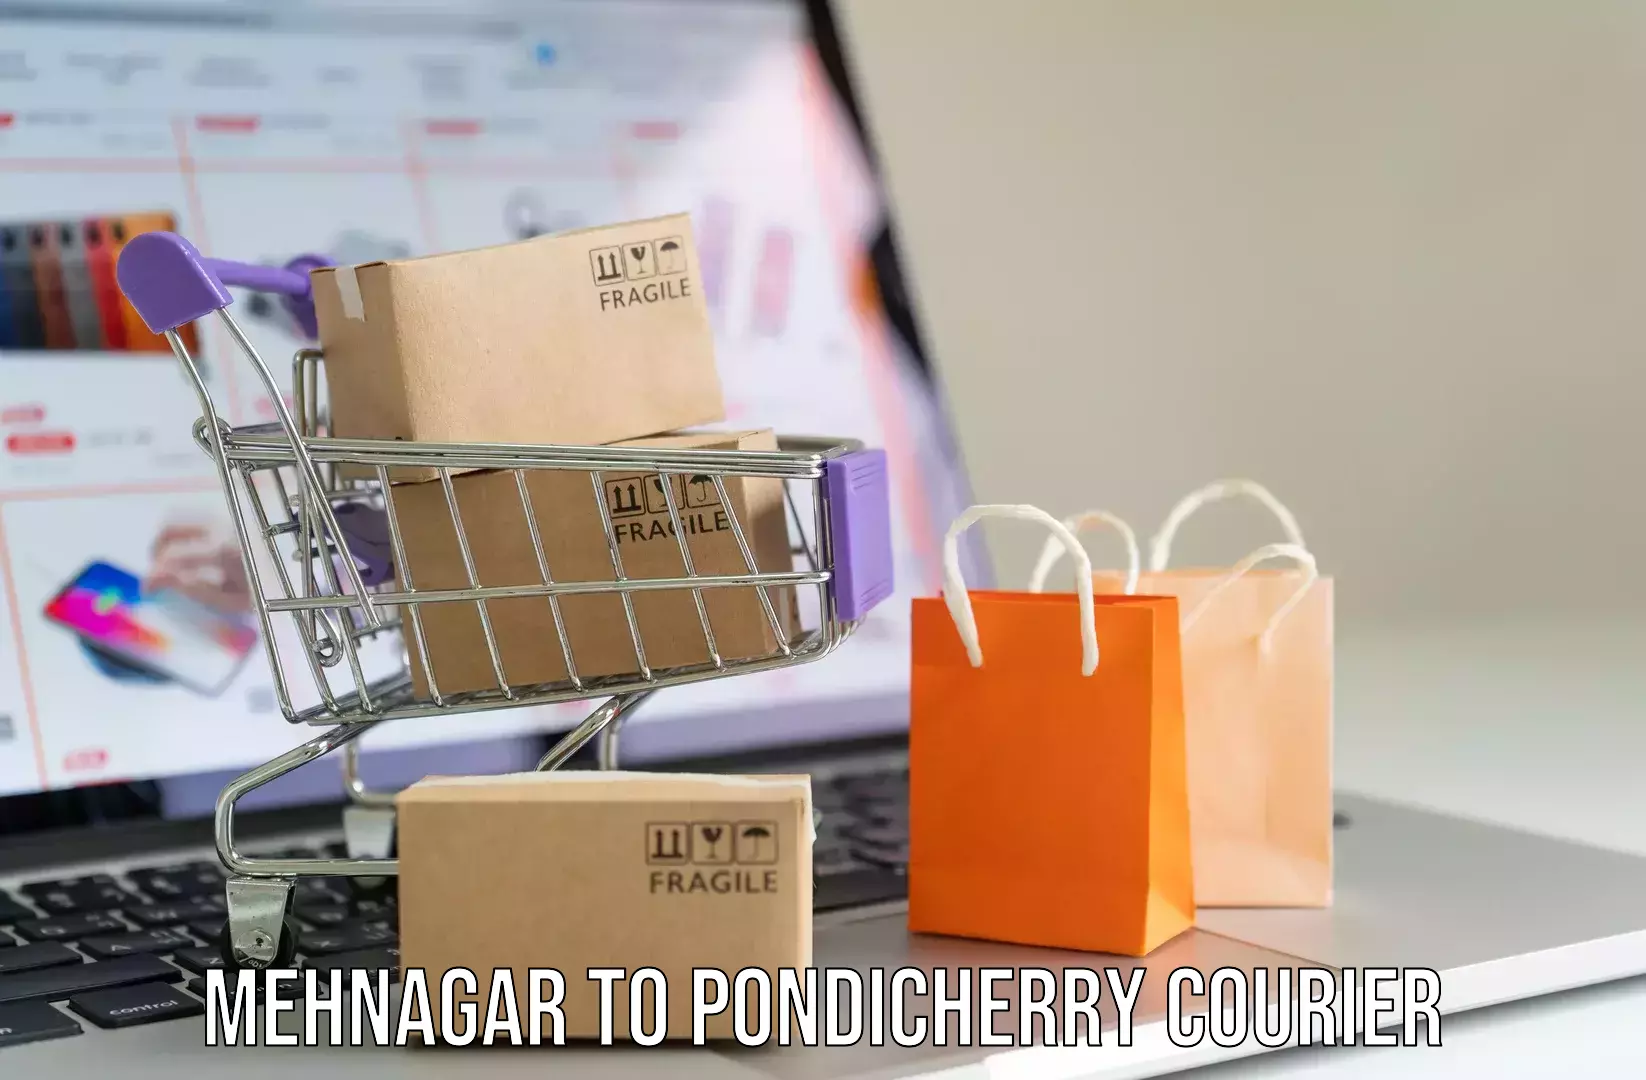 Luggage shipment specialists Mehnagar to Pondicherry